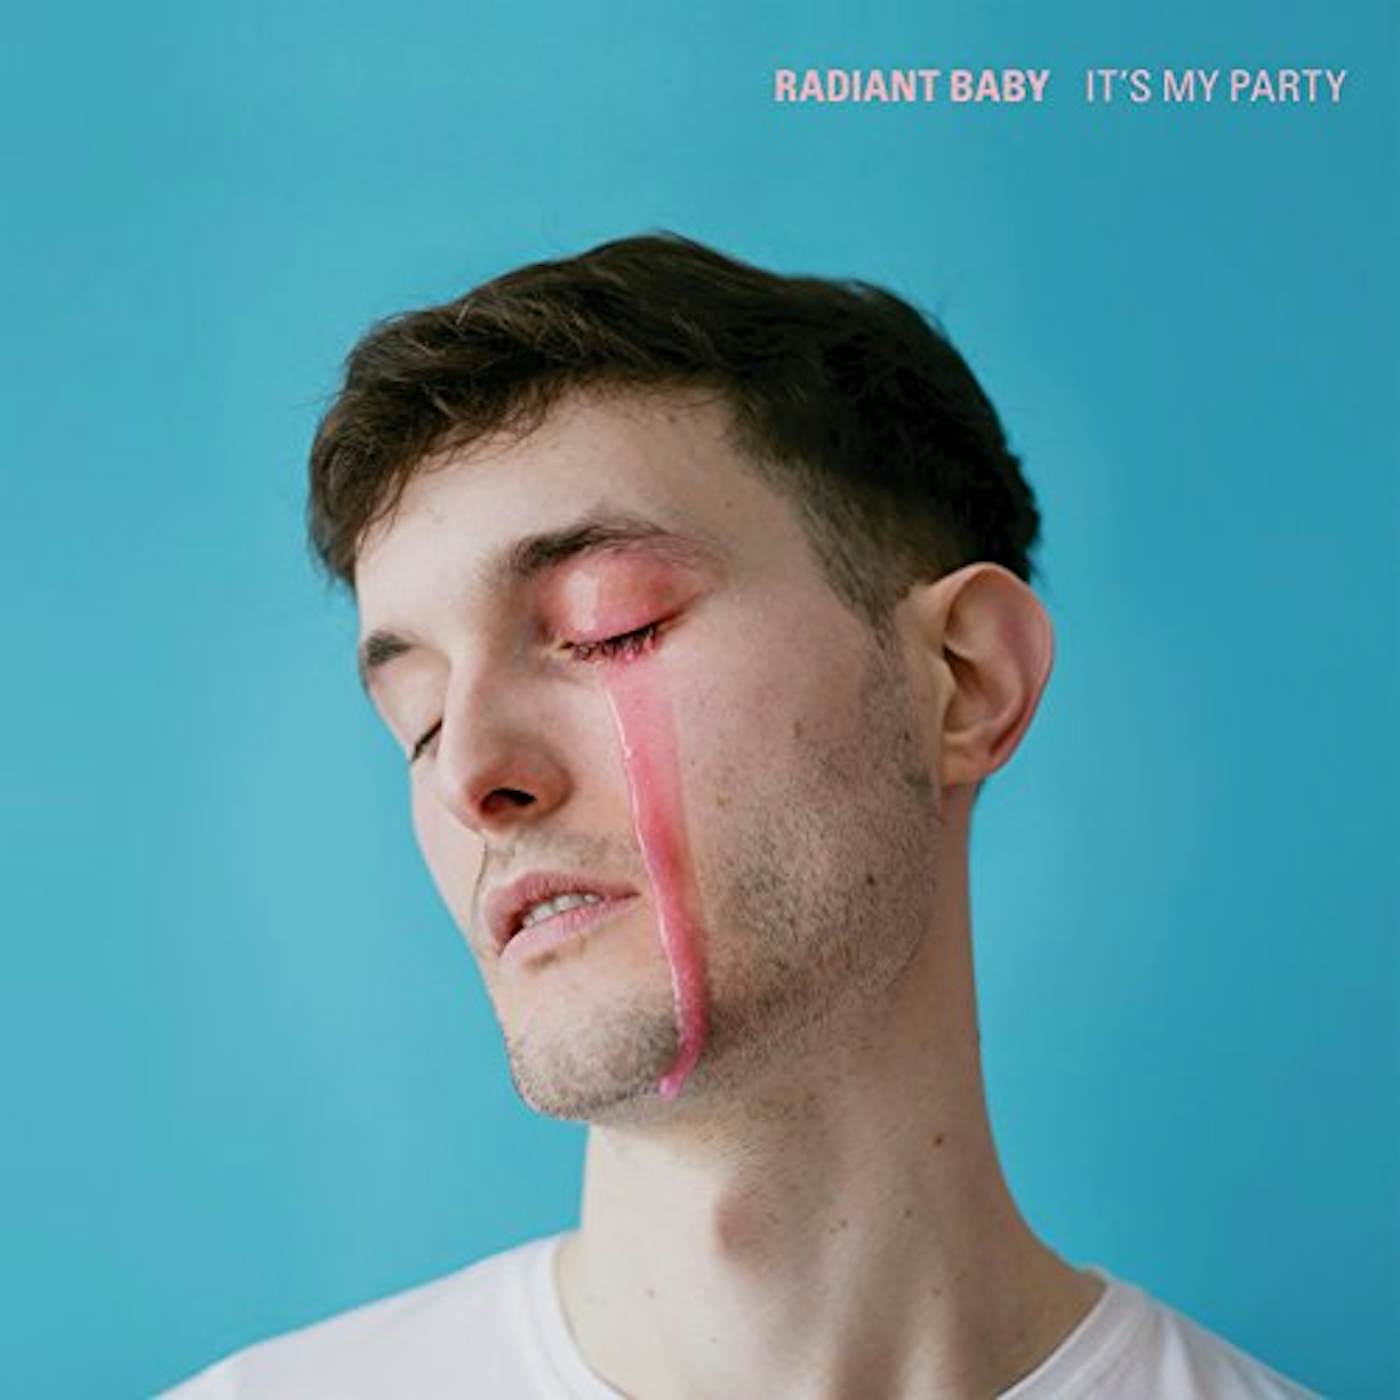 Radiant Baby It's My Party Vinyl Record